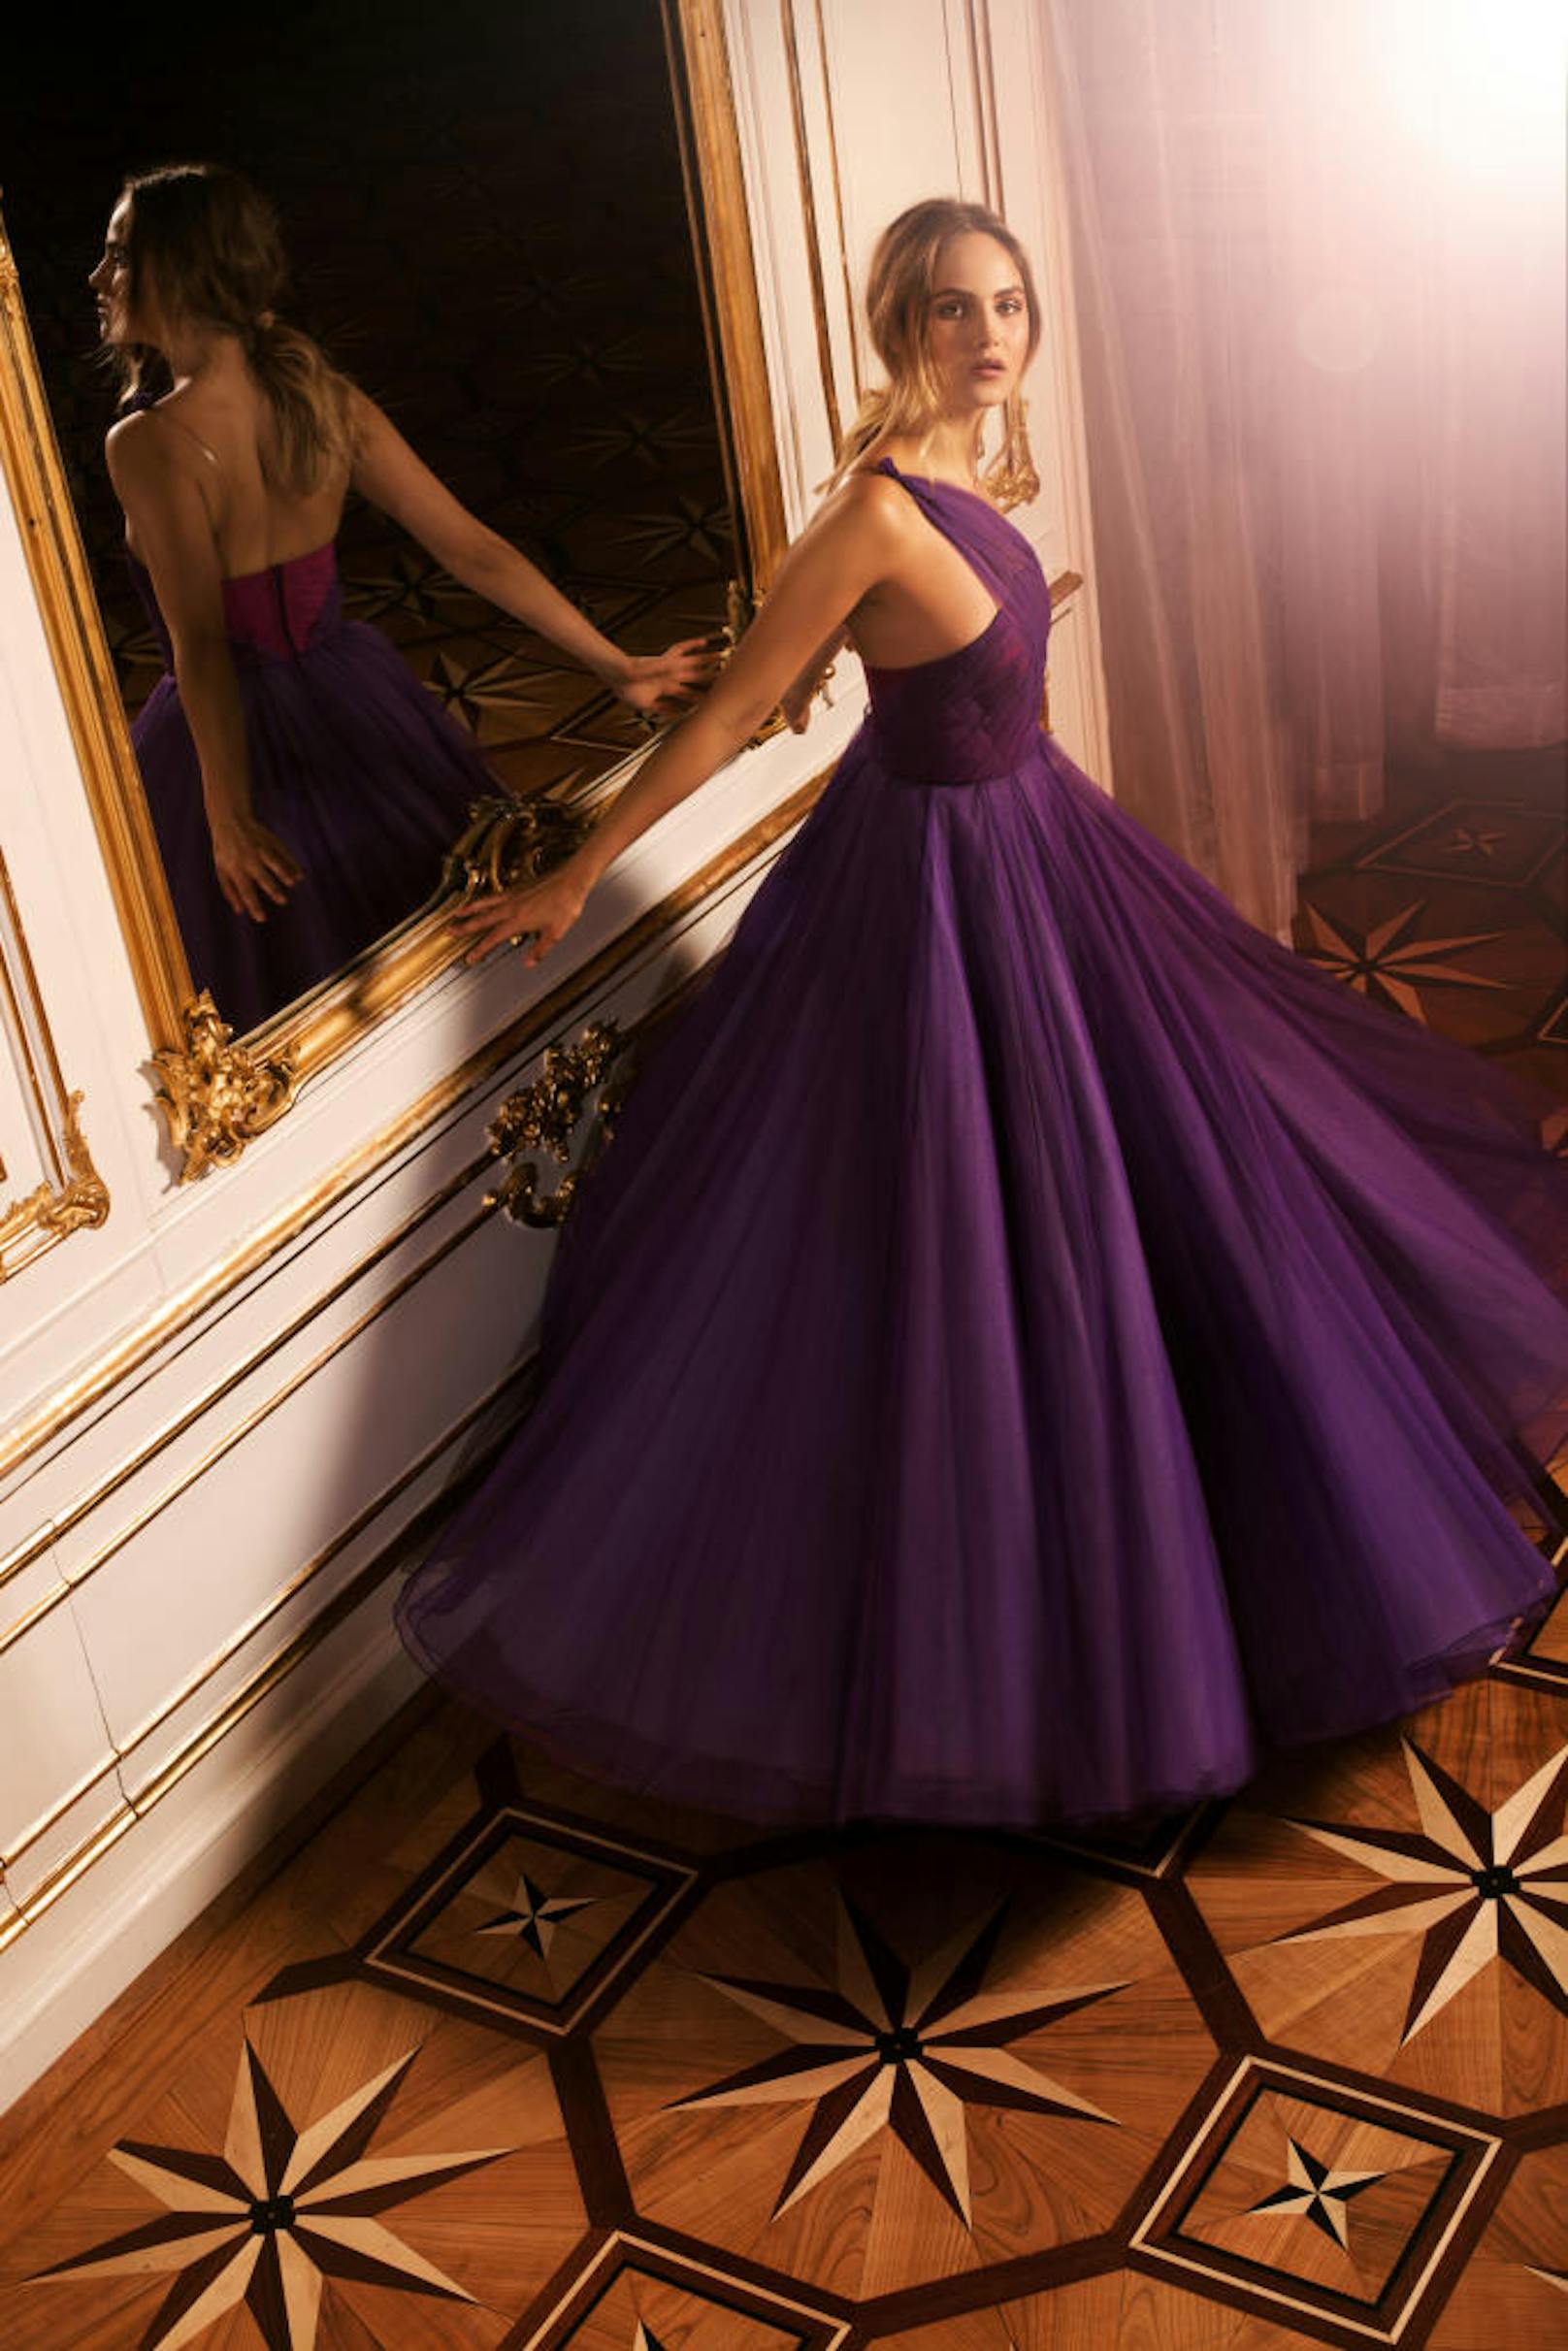 Das trägt die Dame am Silvesterball in der Hofburg: Bodenlange Kleider in Rose, Lavendel und Flieder bis hin zu tiefem Violett.